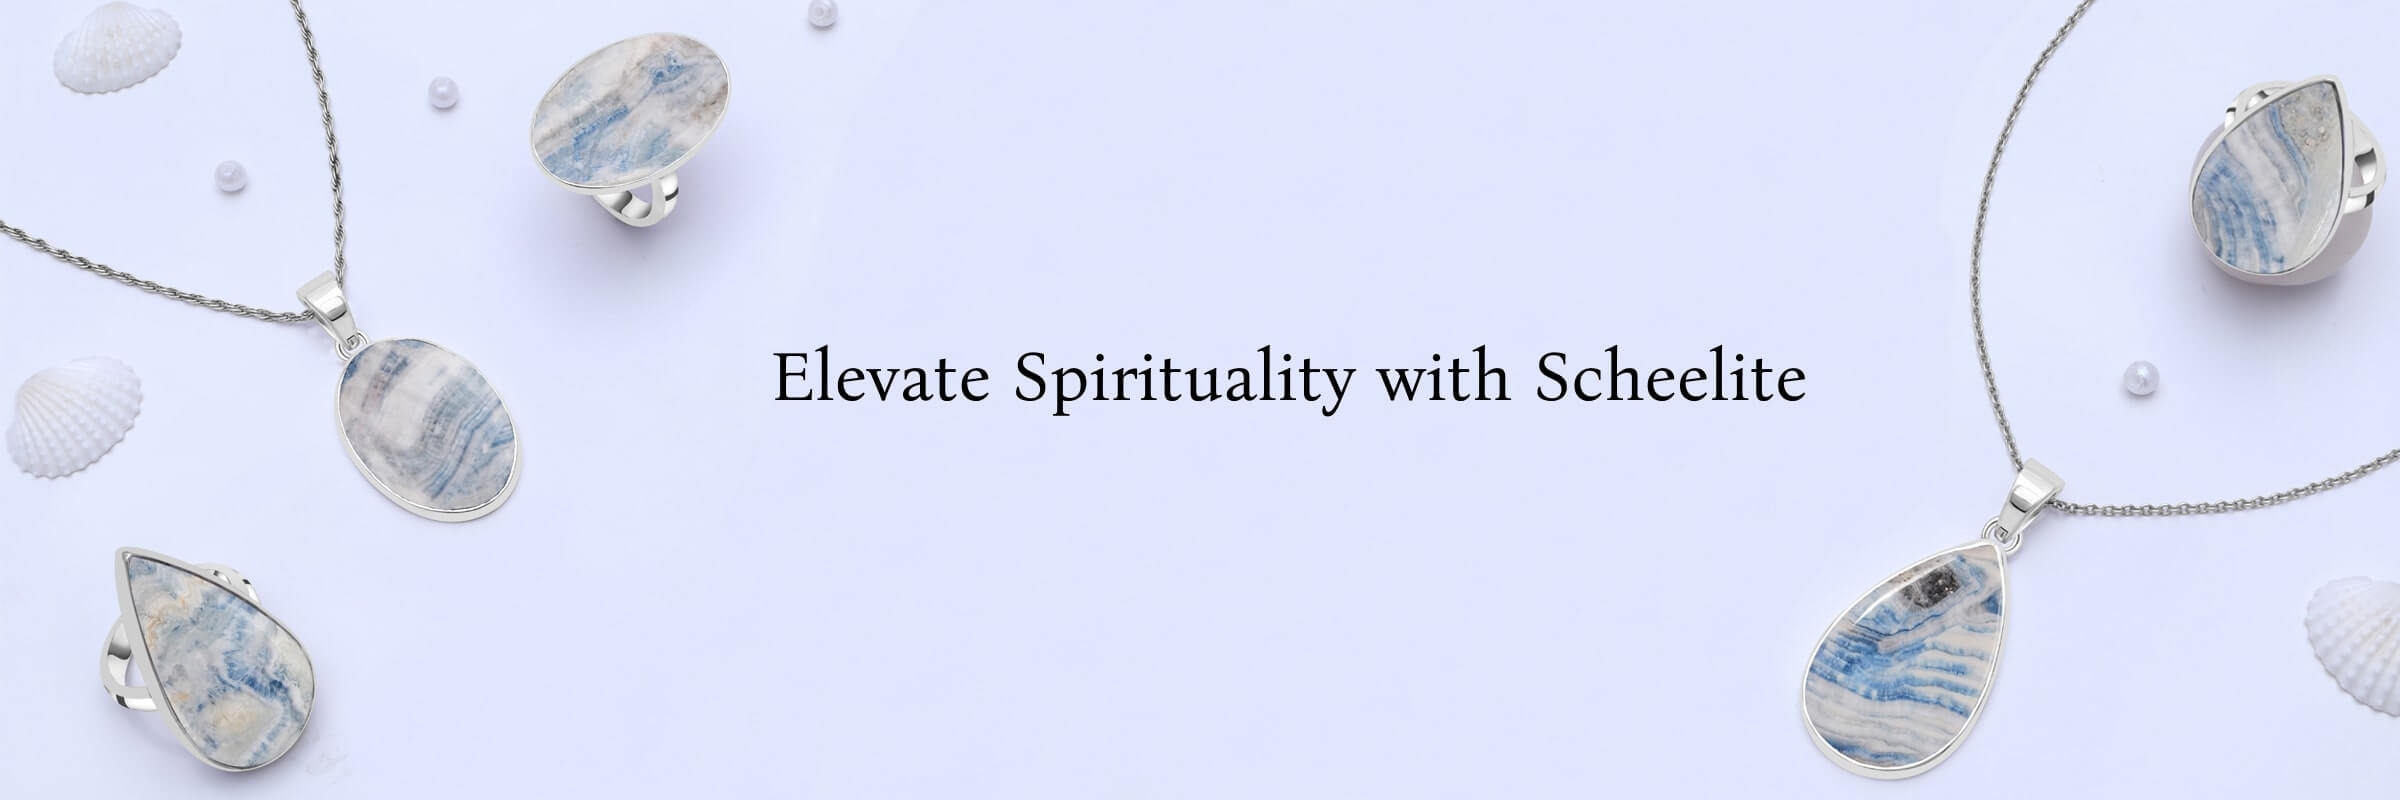 Scheelite Spiritual Properties and Benefits